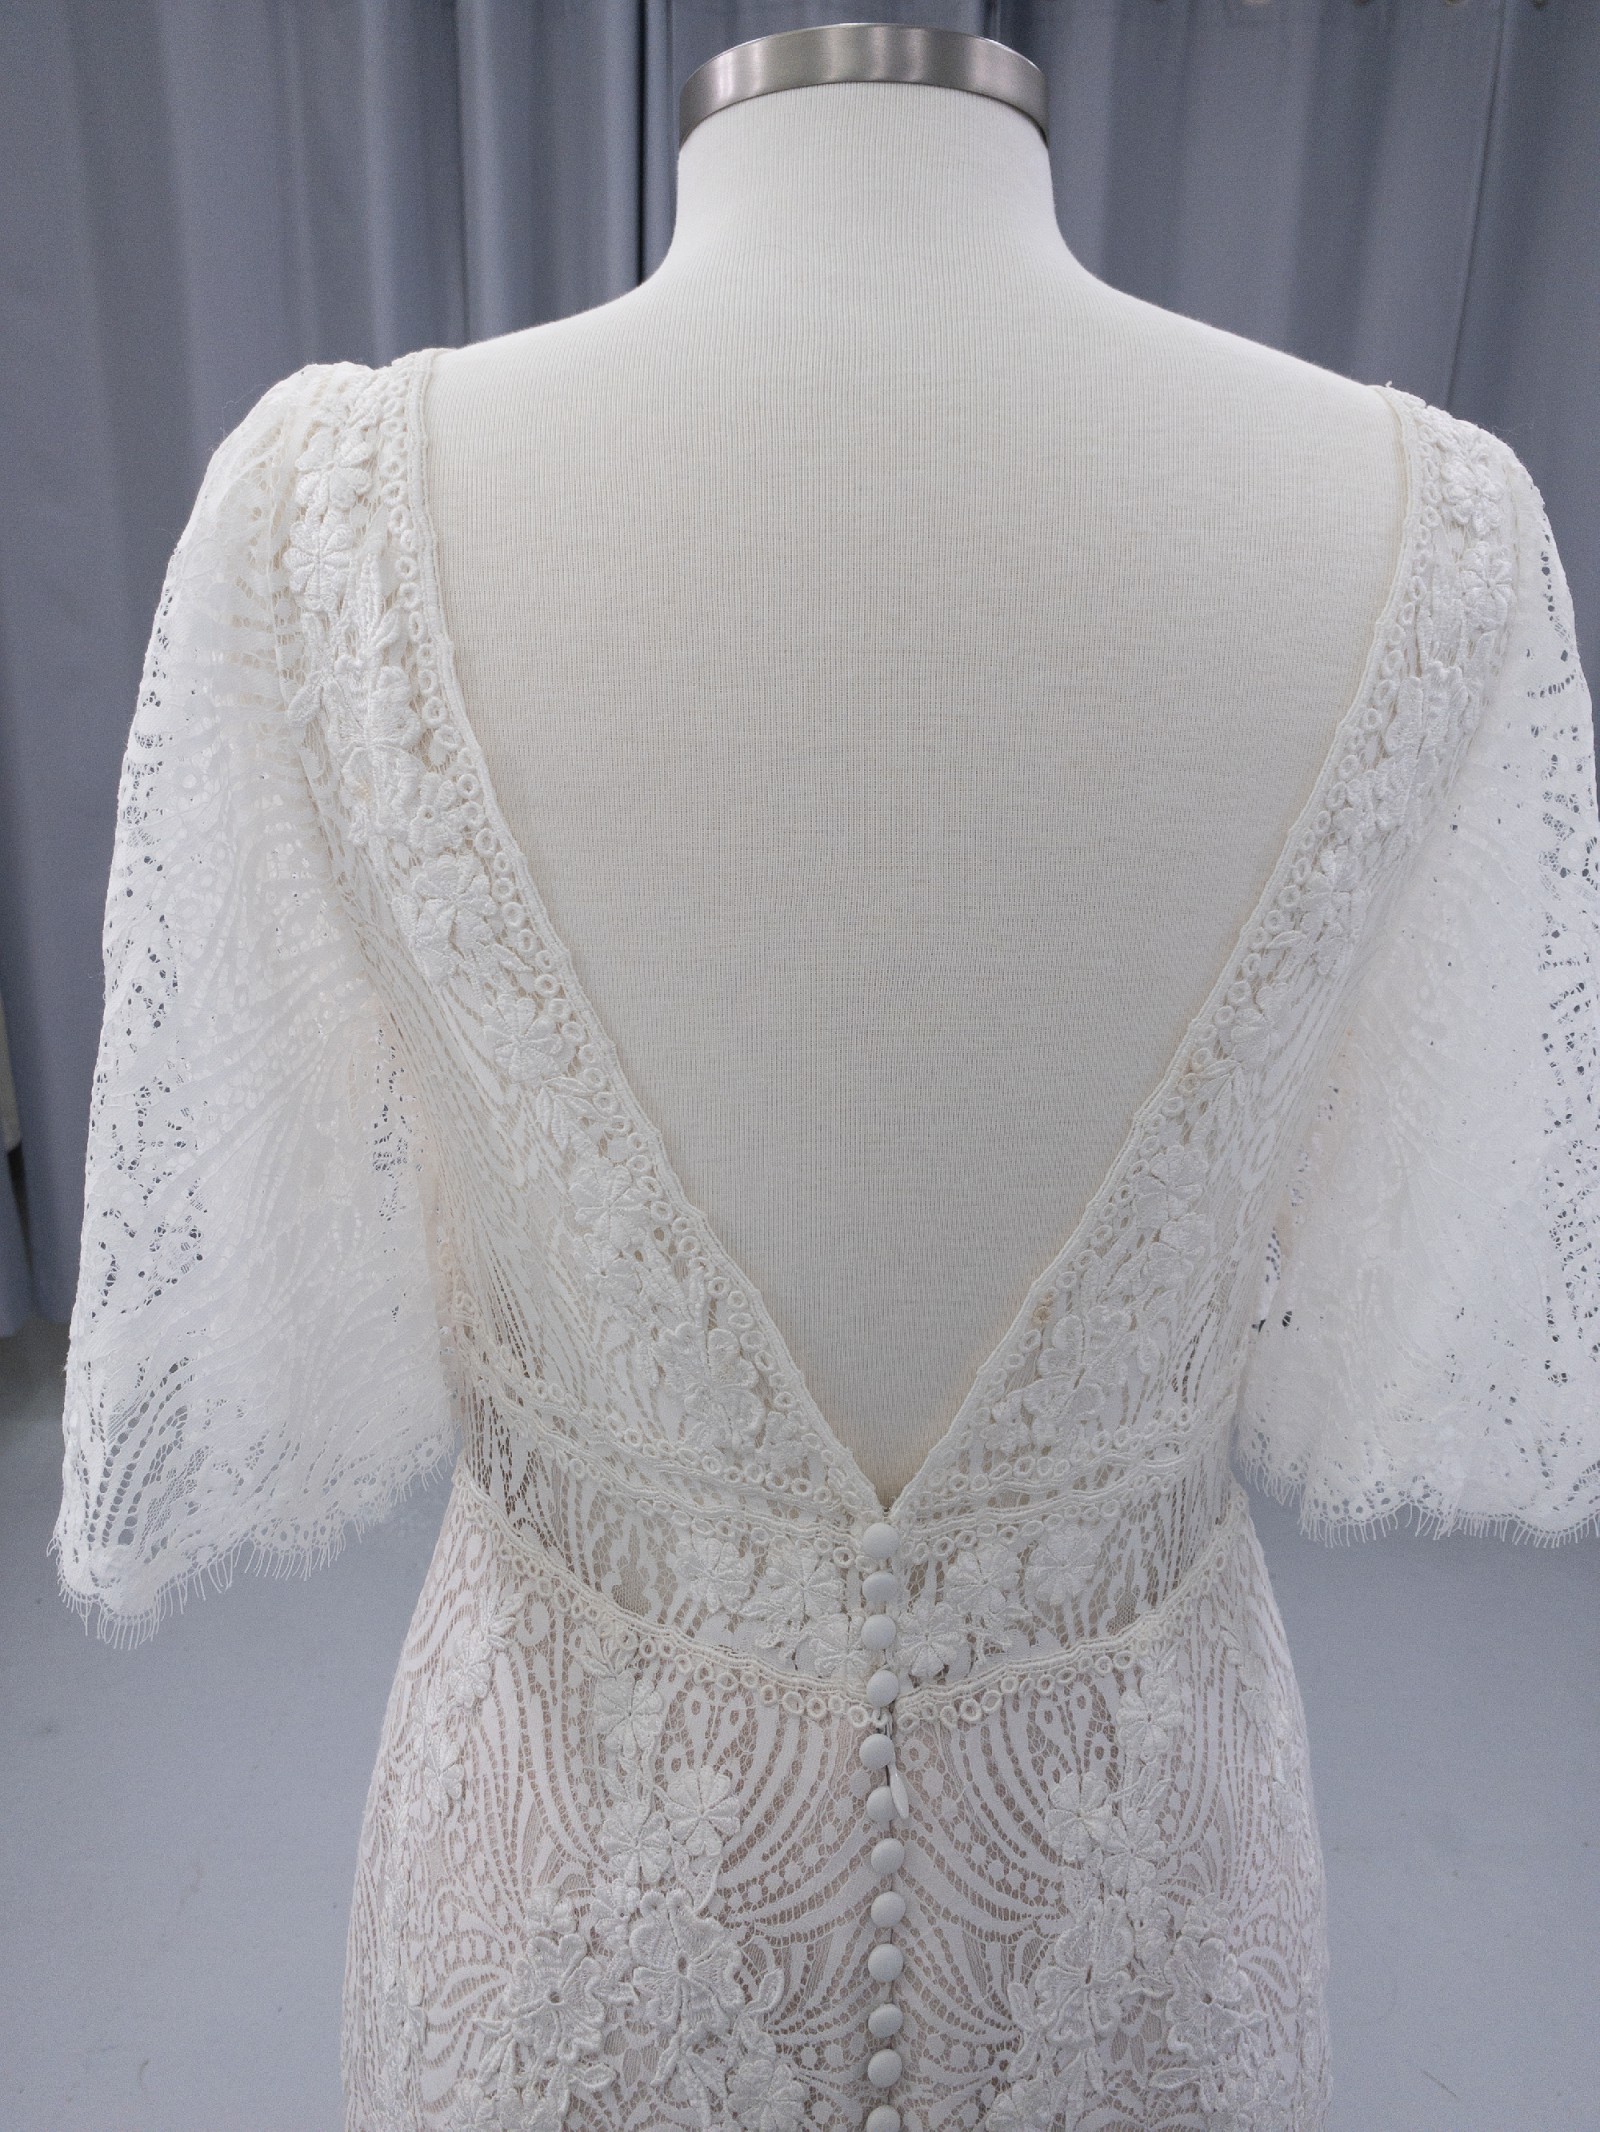 Enzoani Beautiful by Enzoani BT20-05 Sample Wedding Dress Save 55% ...